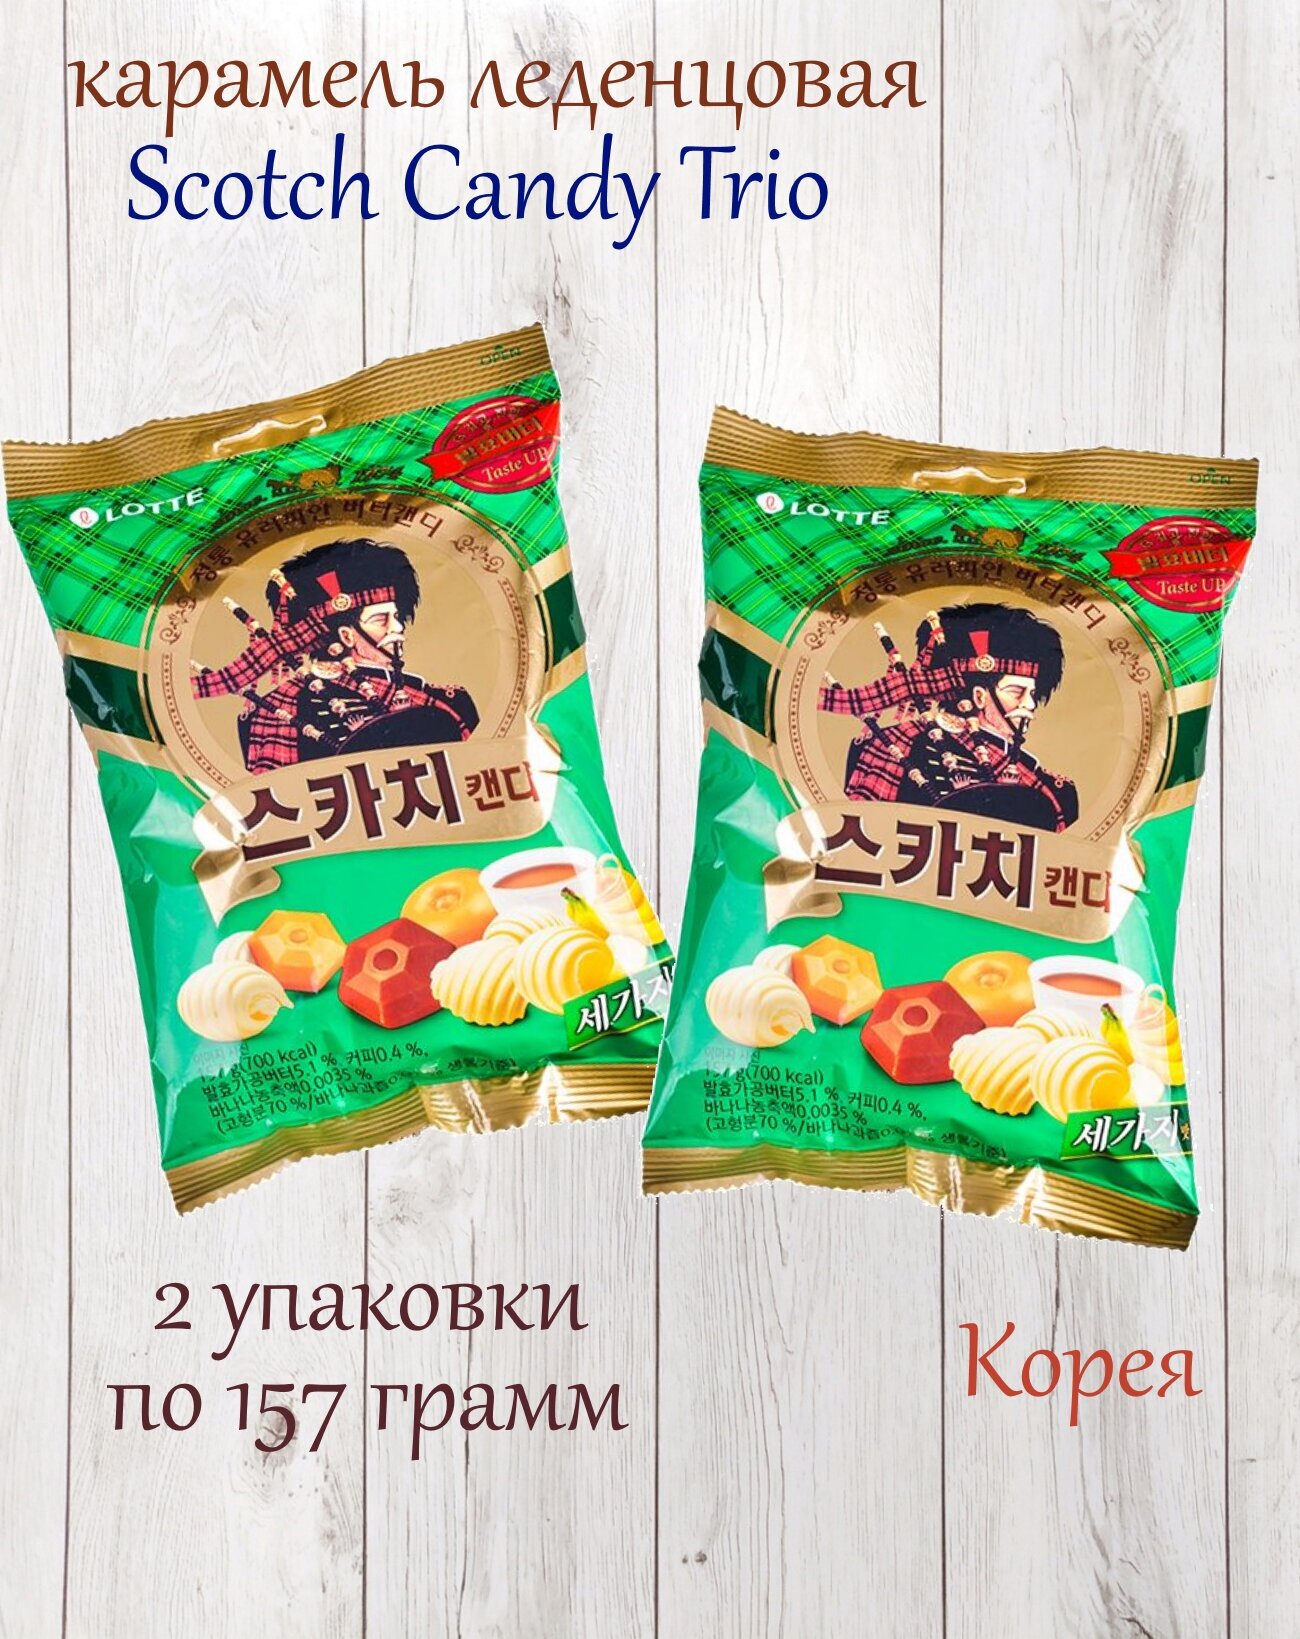 Карамель леденцовая Lotte Scotch Candy Trio, ассорти, 2 упаковки по 157 грамм